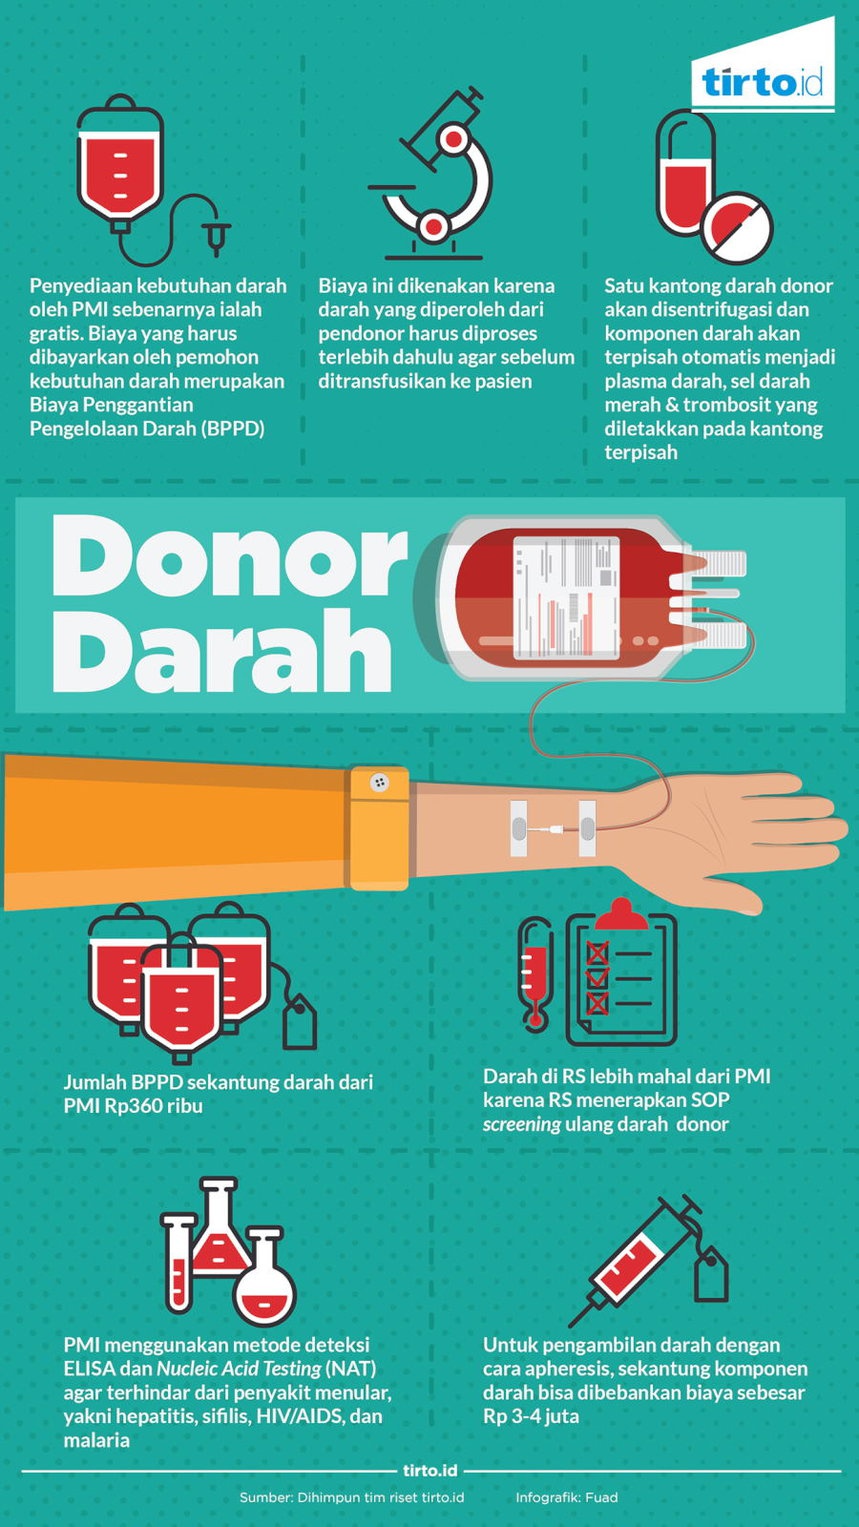 Mengapa Darah dari Donor Tidak Gratis?